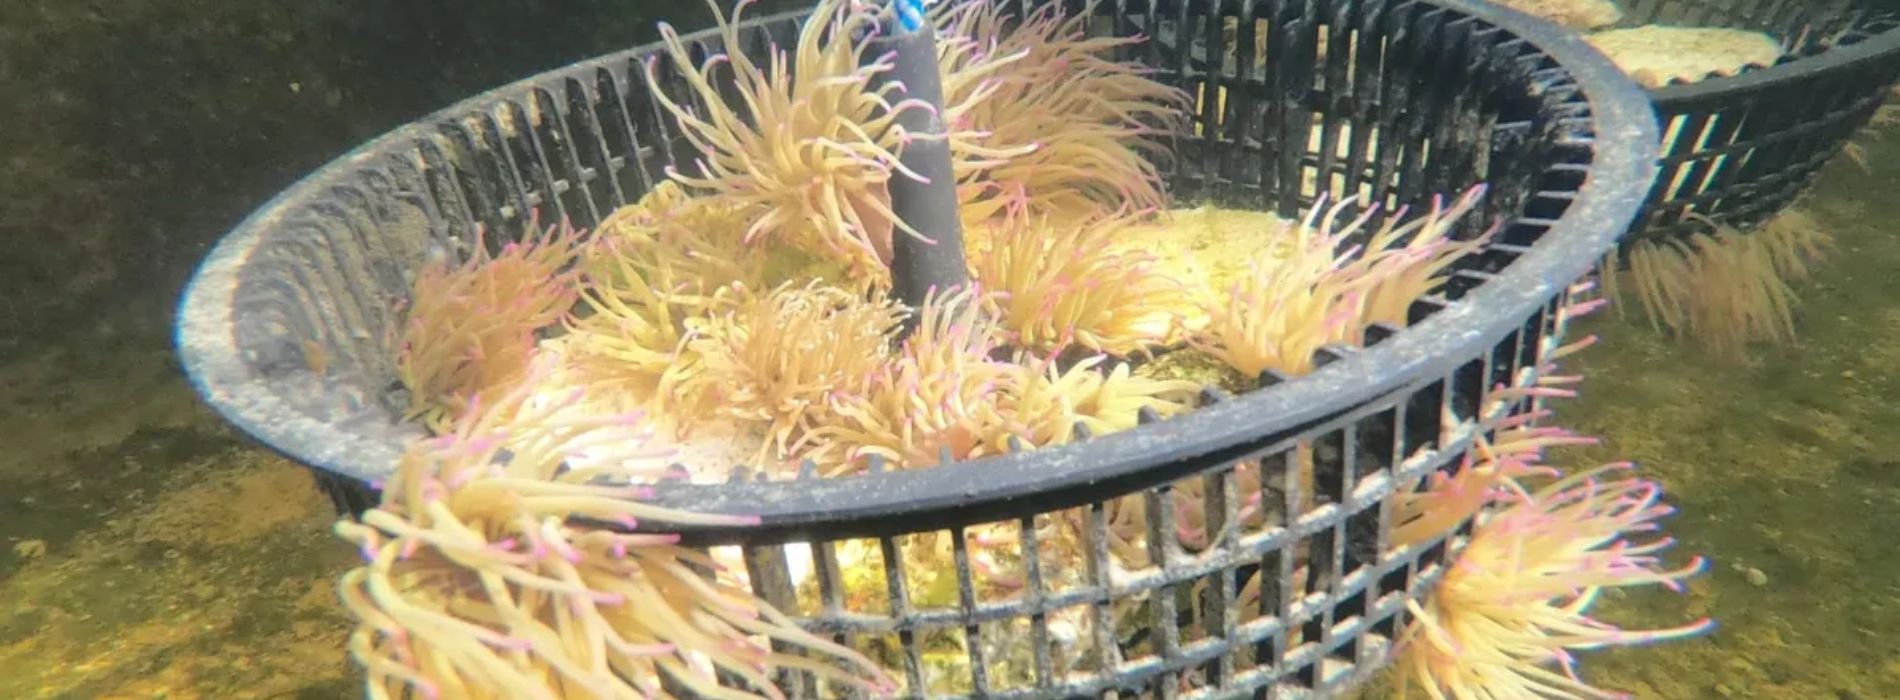 sea-anemones-in-a-bucket